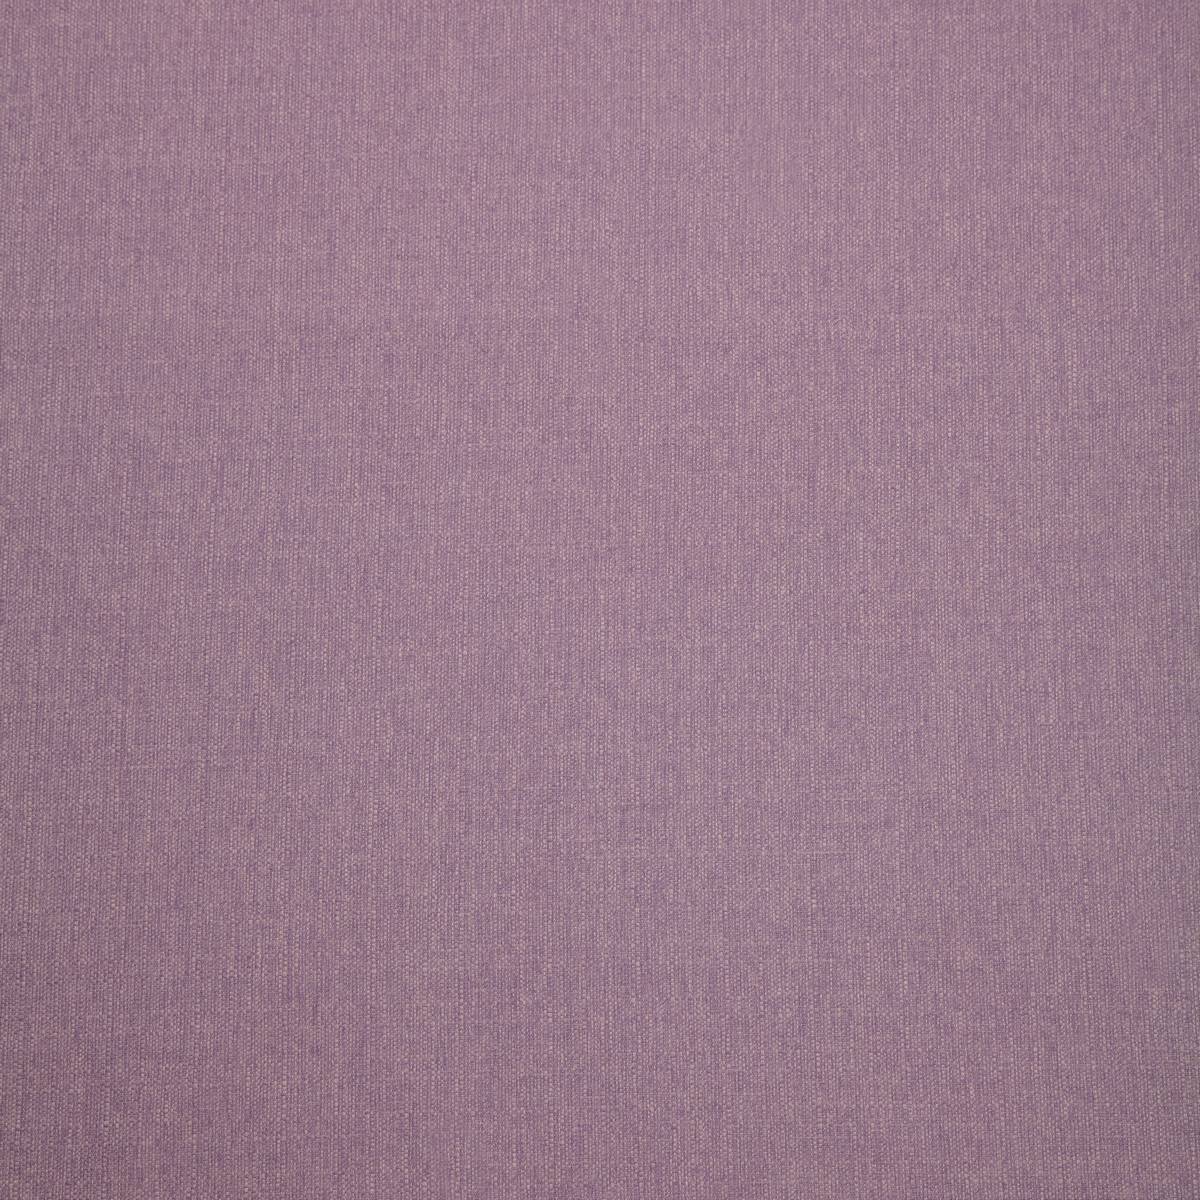 Shetland Mauve Fabric by iLiv